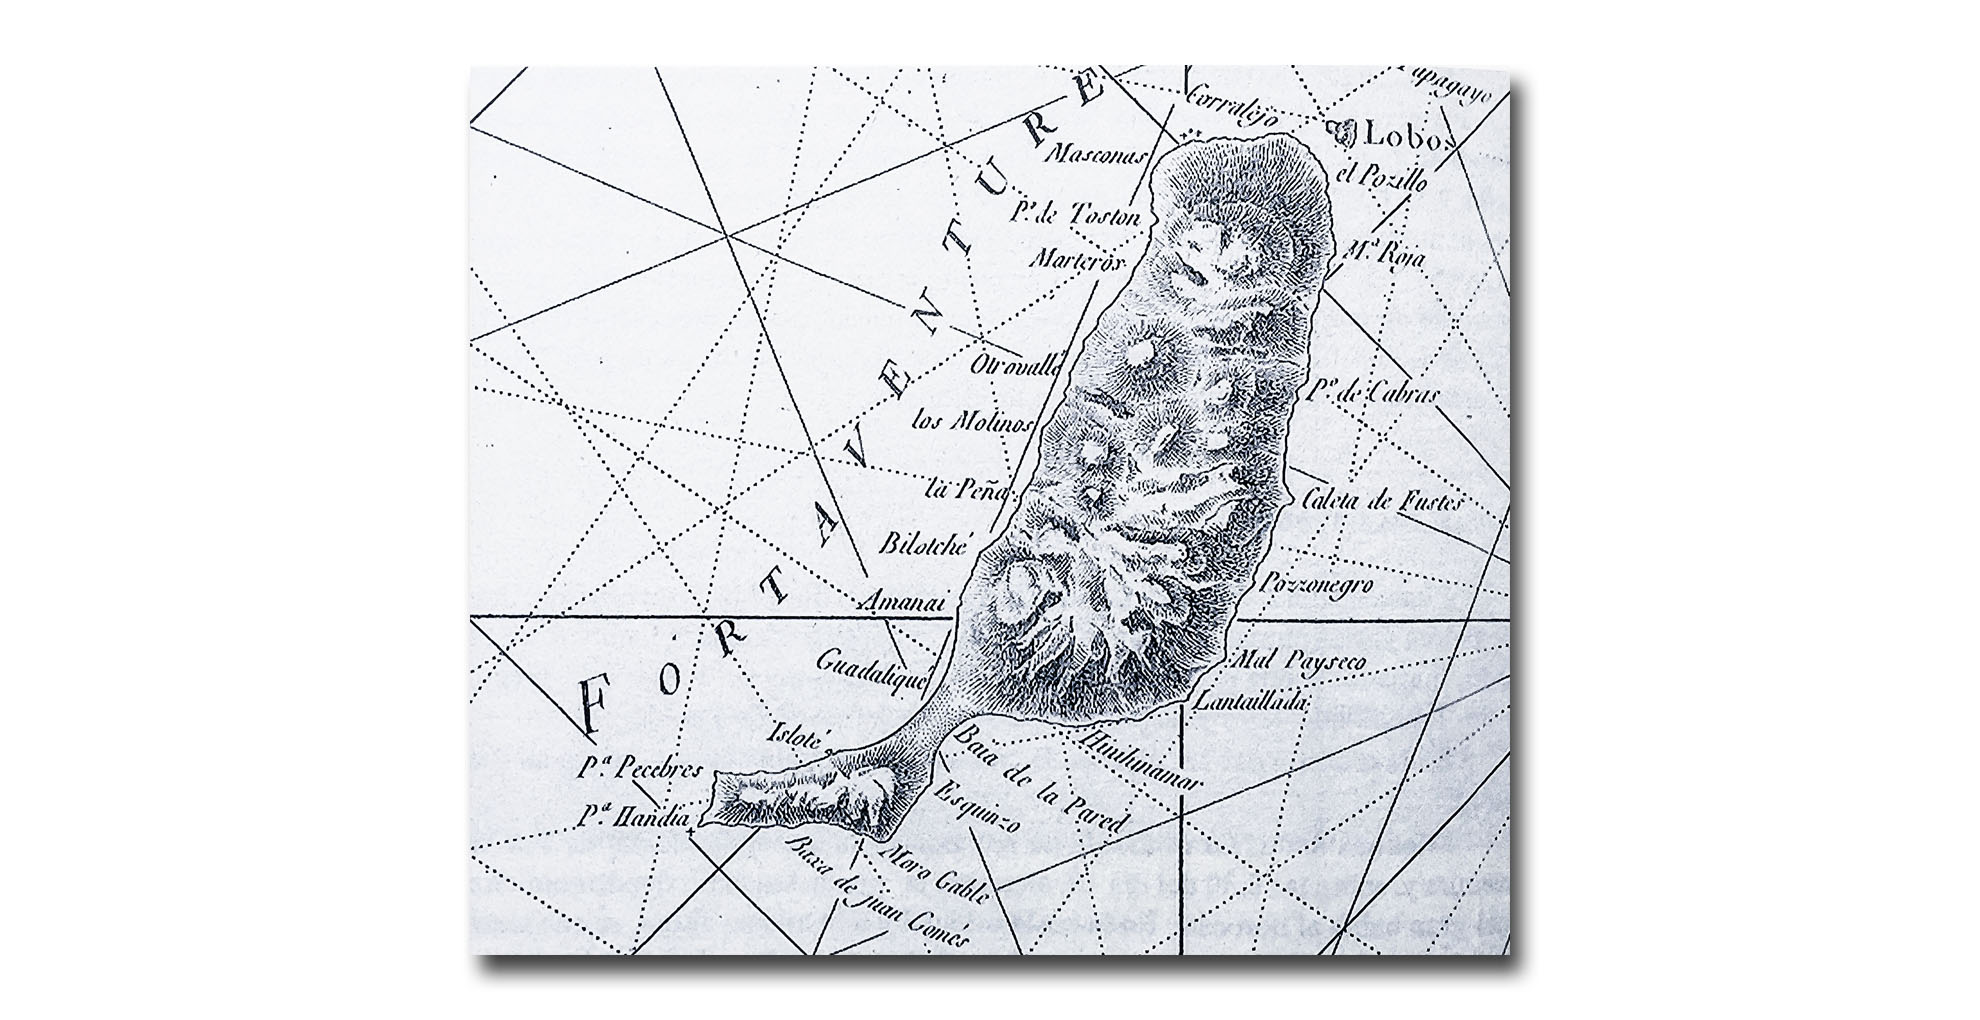 Die ersten exakt vermessenen Karten des kanarischen Archipels erstellt vom, französischer Mathematiker und Seemann Jean-Charles de Borda aus dem Jahre 1780.